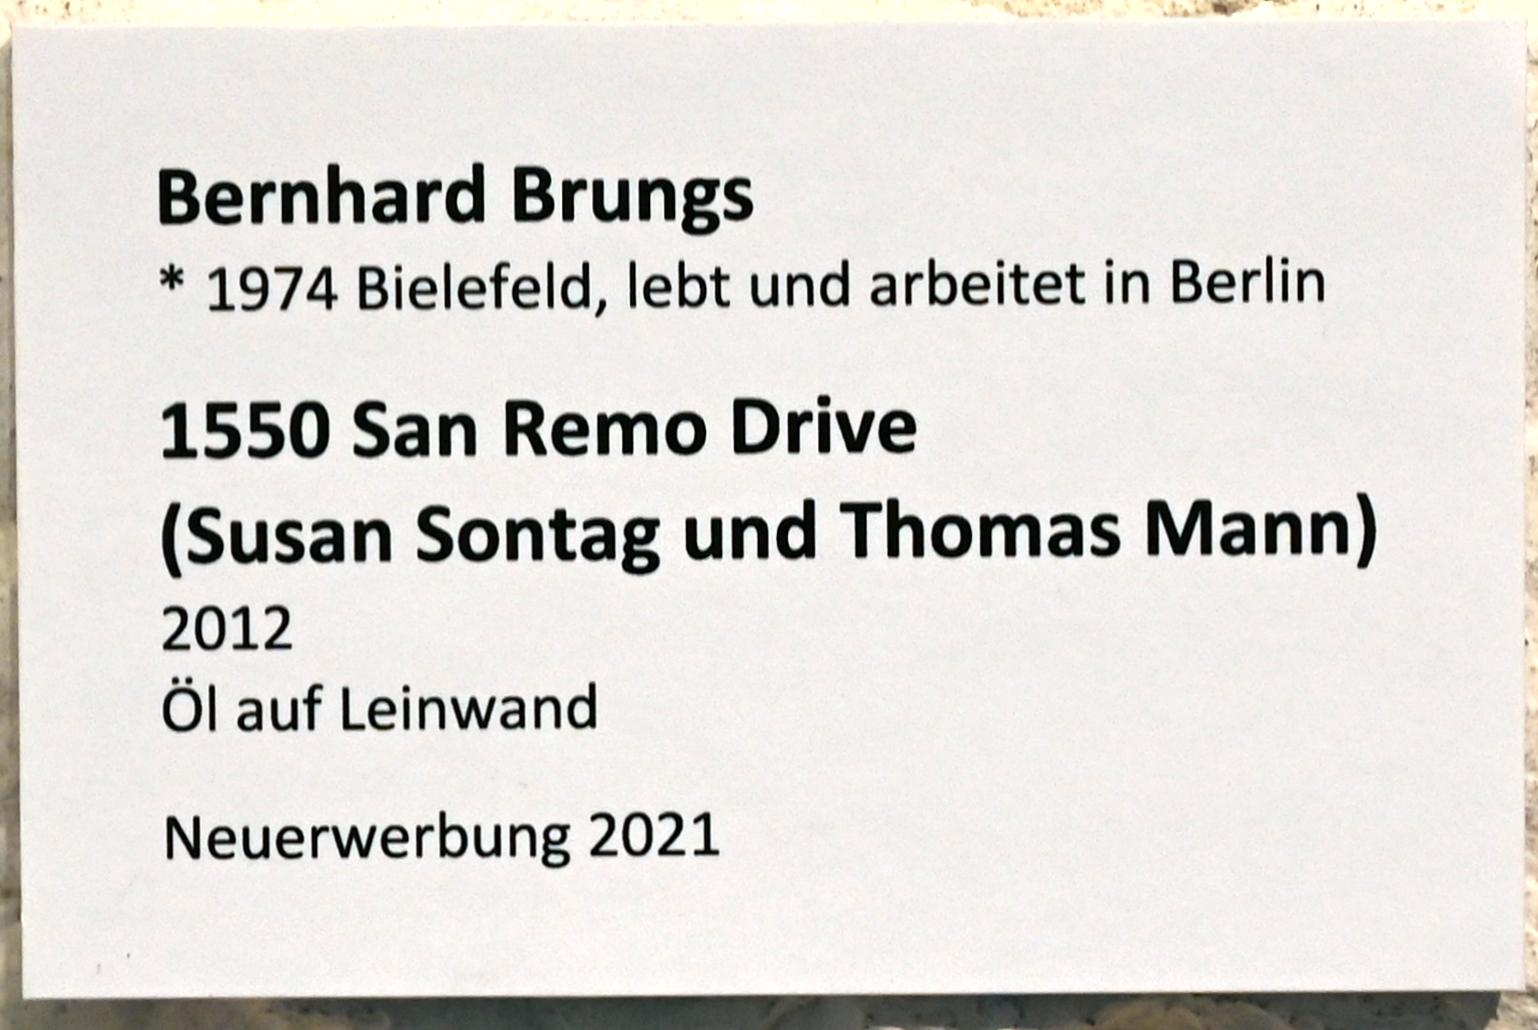 Bernhard Brungs (2012), 1550 San Remo Drive (Susan Sontag und Thomas Mann), Lübeck, St. Annen-Museum, Eingangshalle, 2012, Bild 2/2